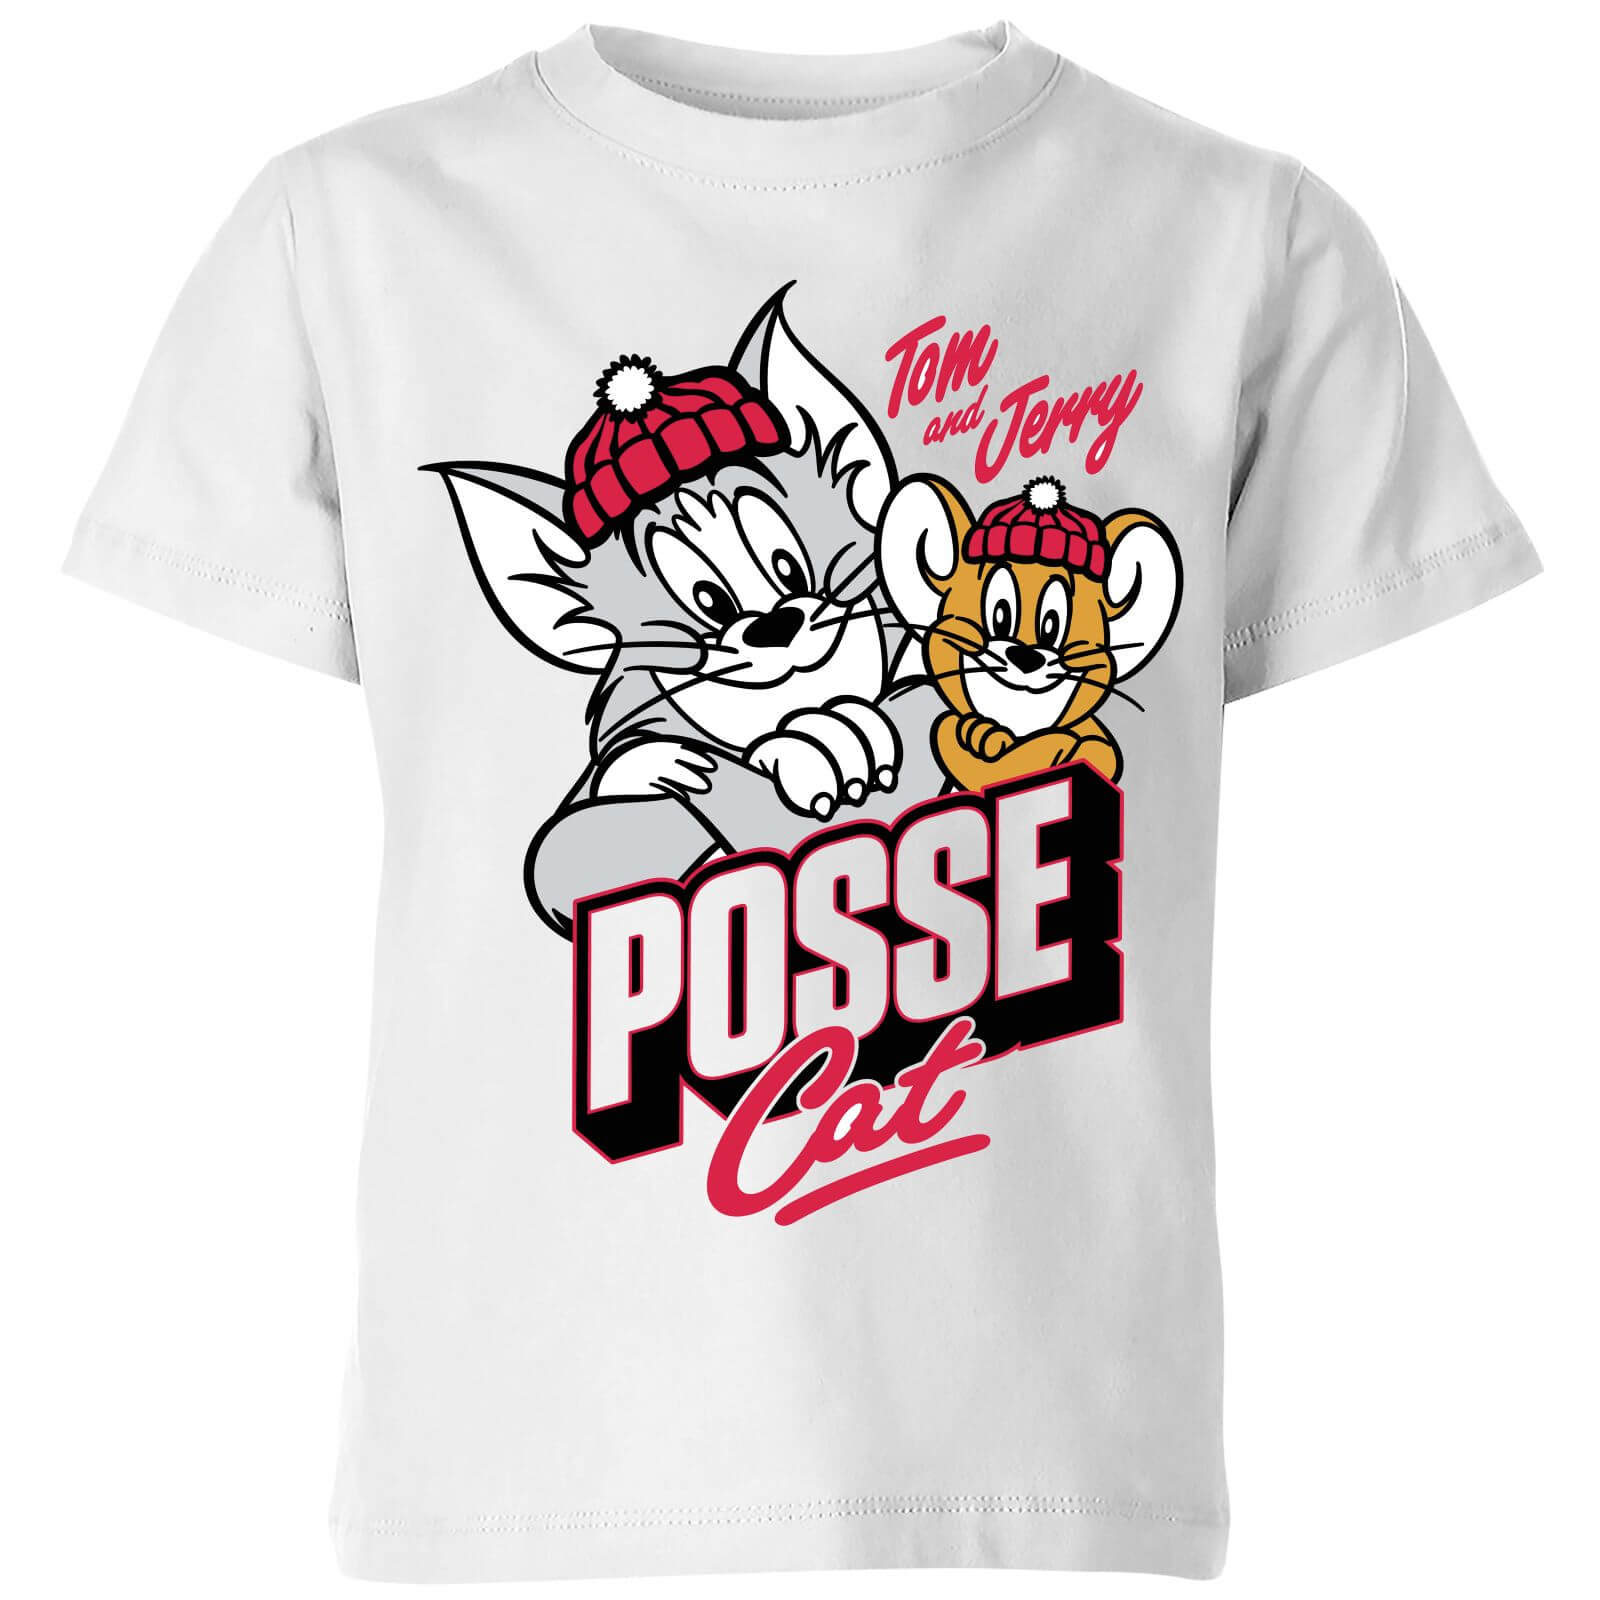 Tom & Jerry Posse Cat Kids' T-Shirt - White - 9-10 Years